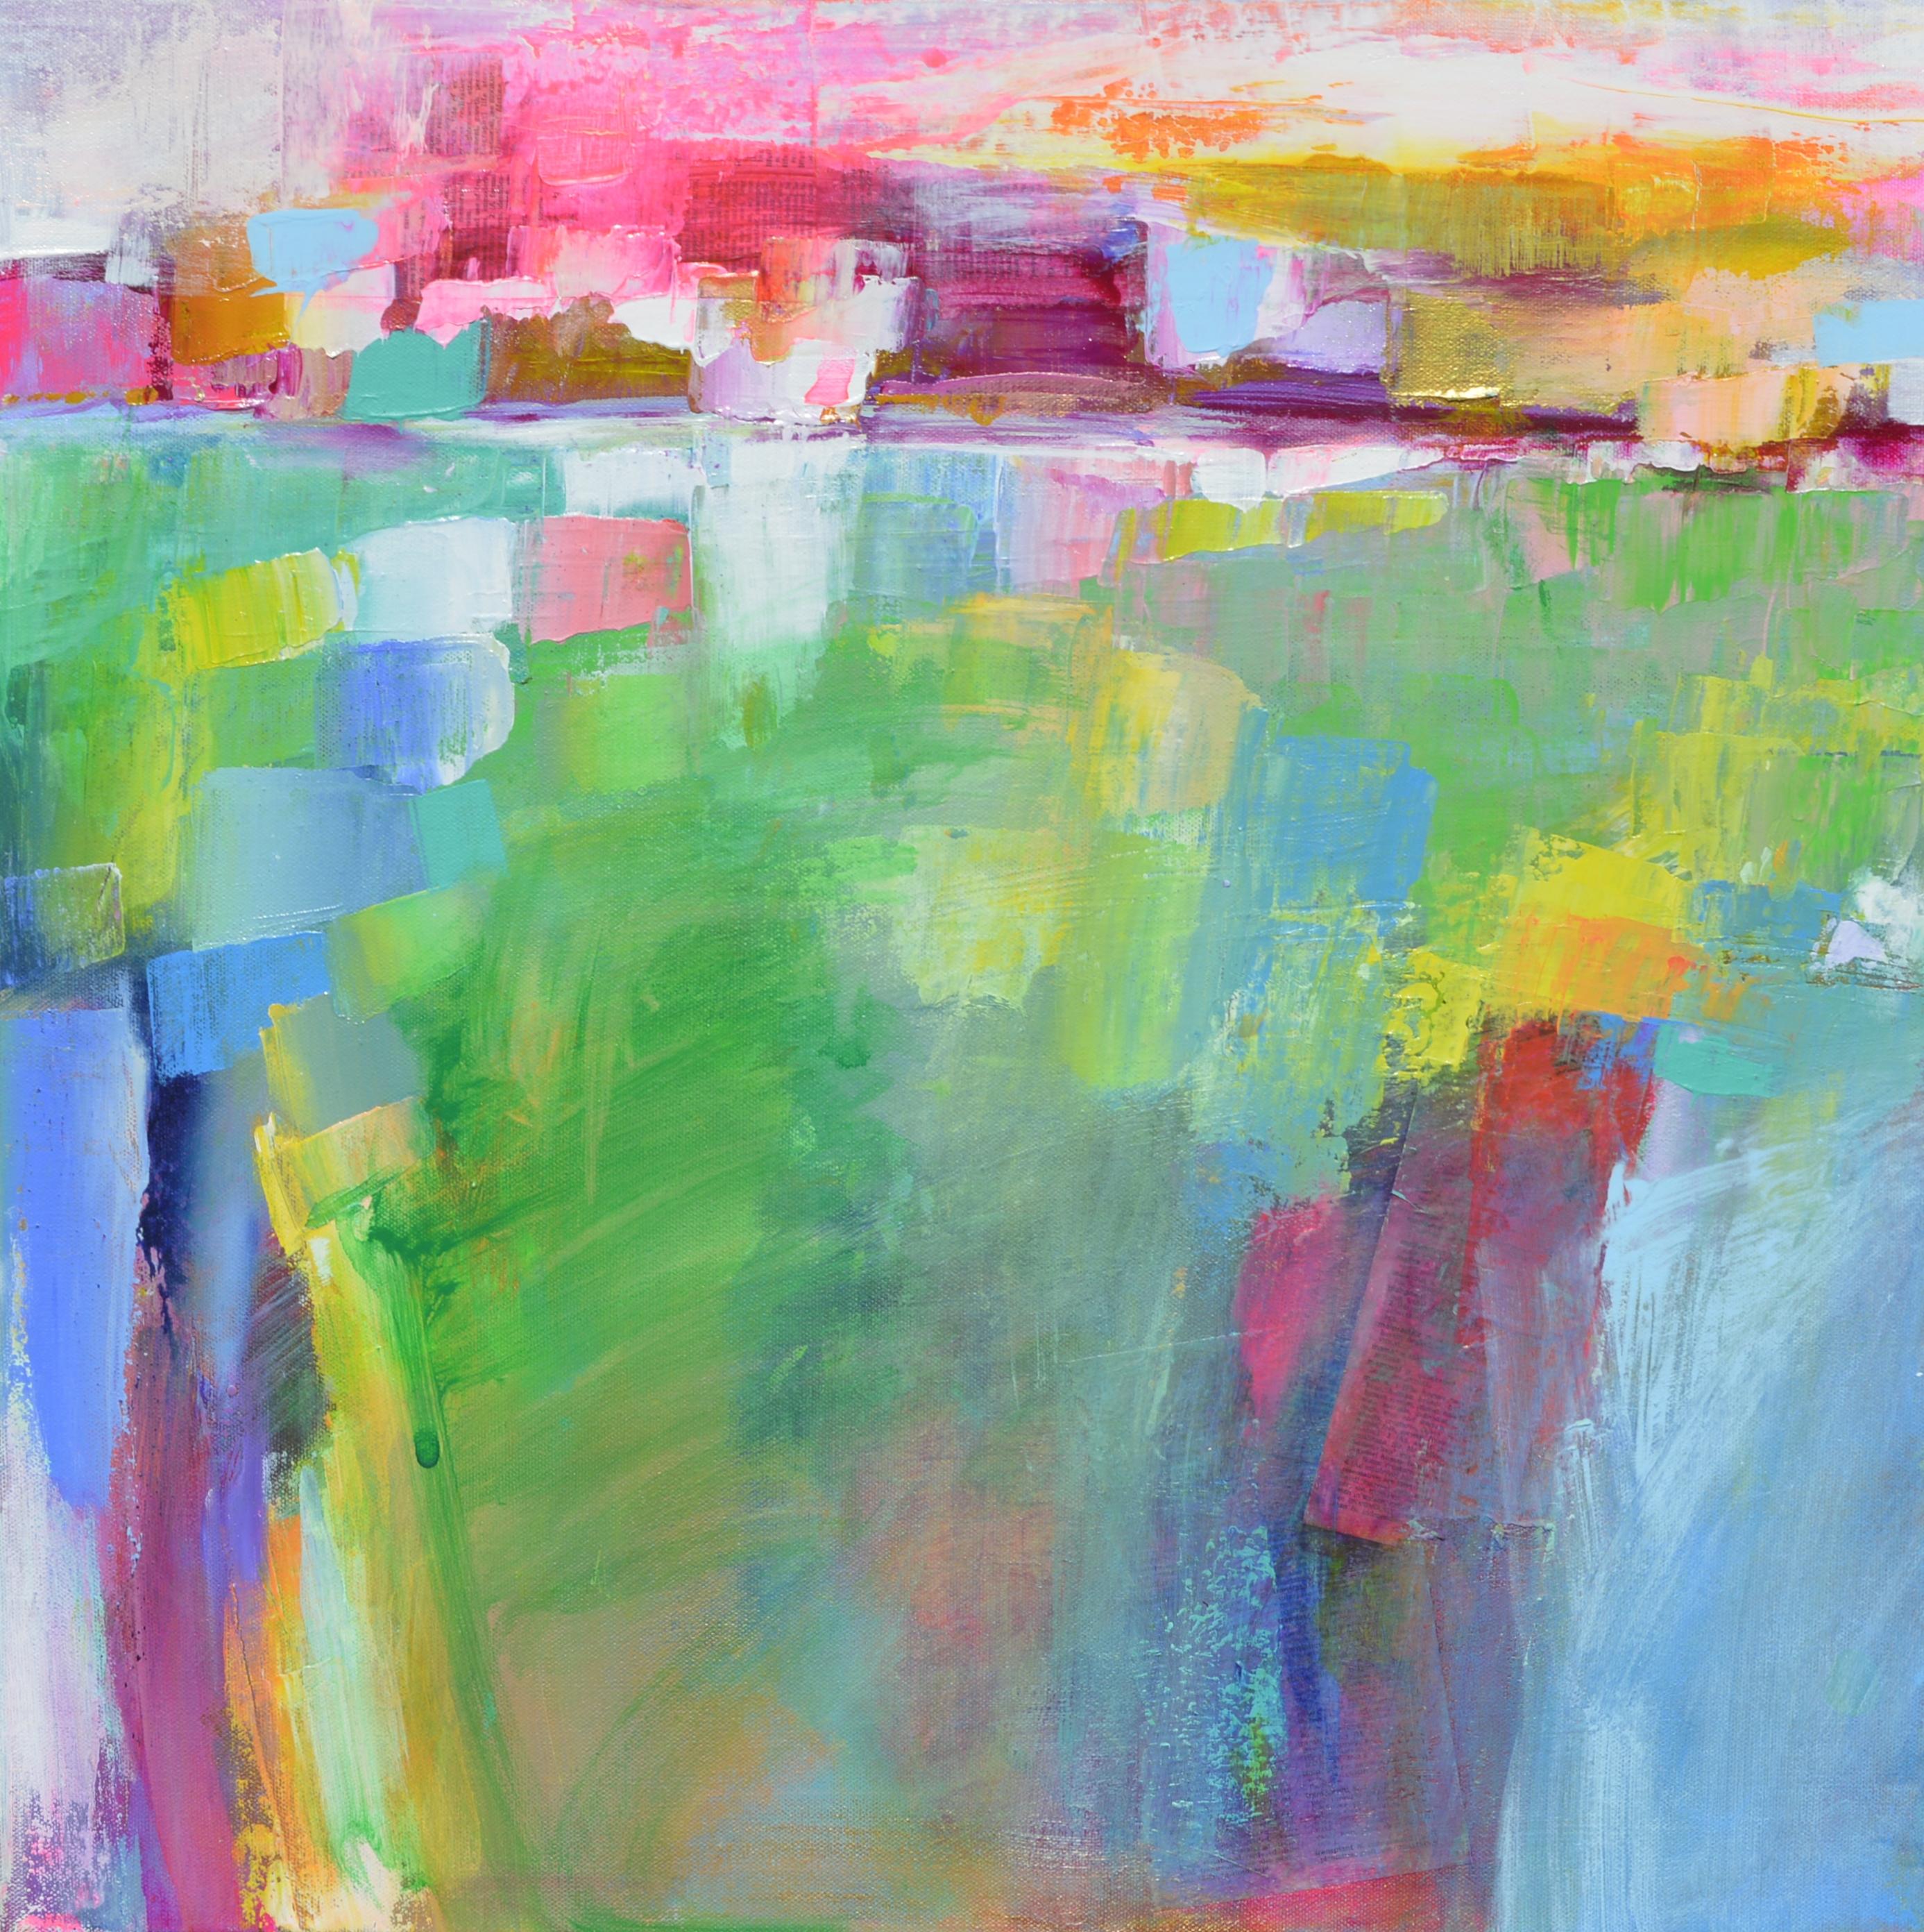 Landschafts-Abstraktion – die Farbfelder